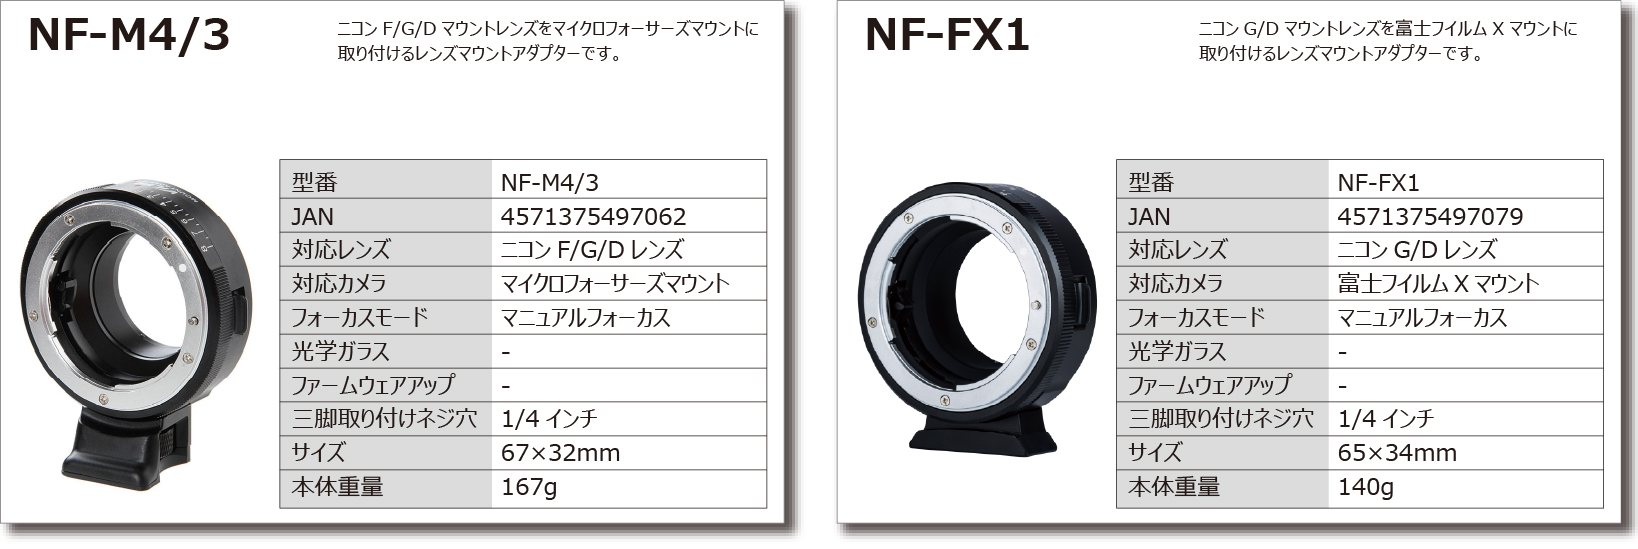 NF-M4/3マウントアダプターNF-FX1マウントアダプター